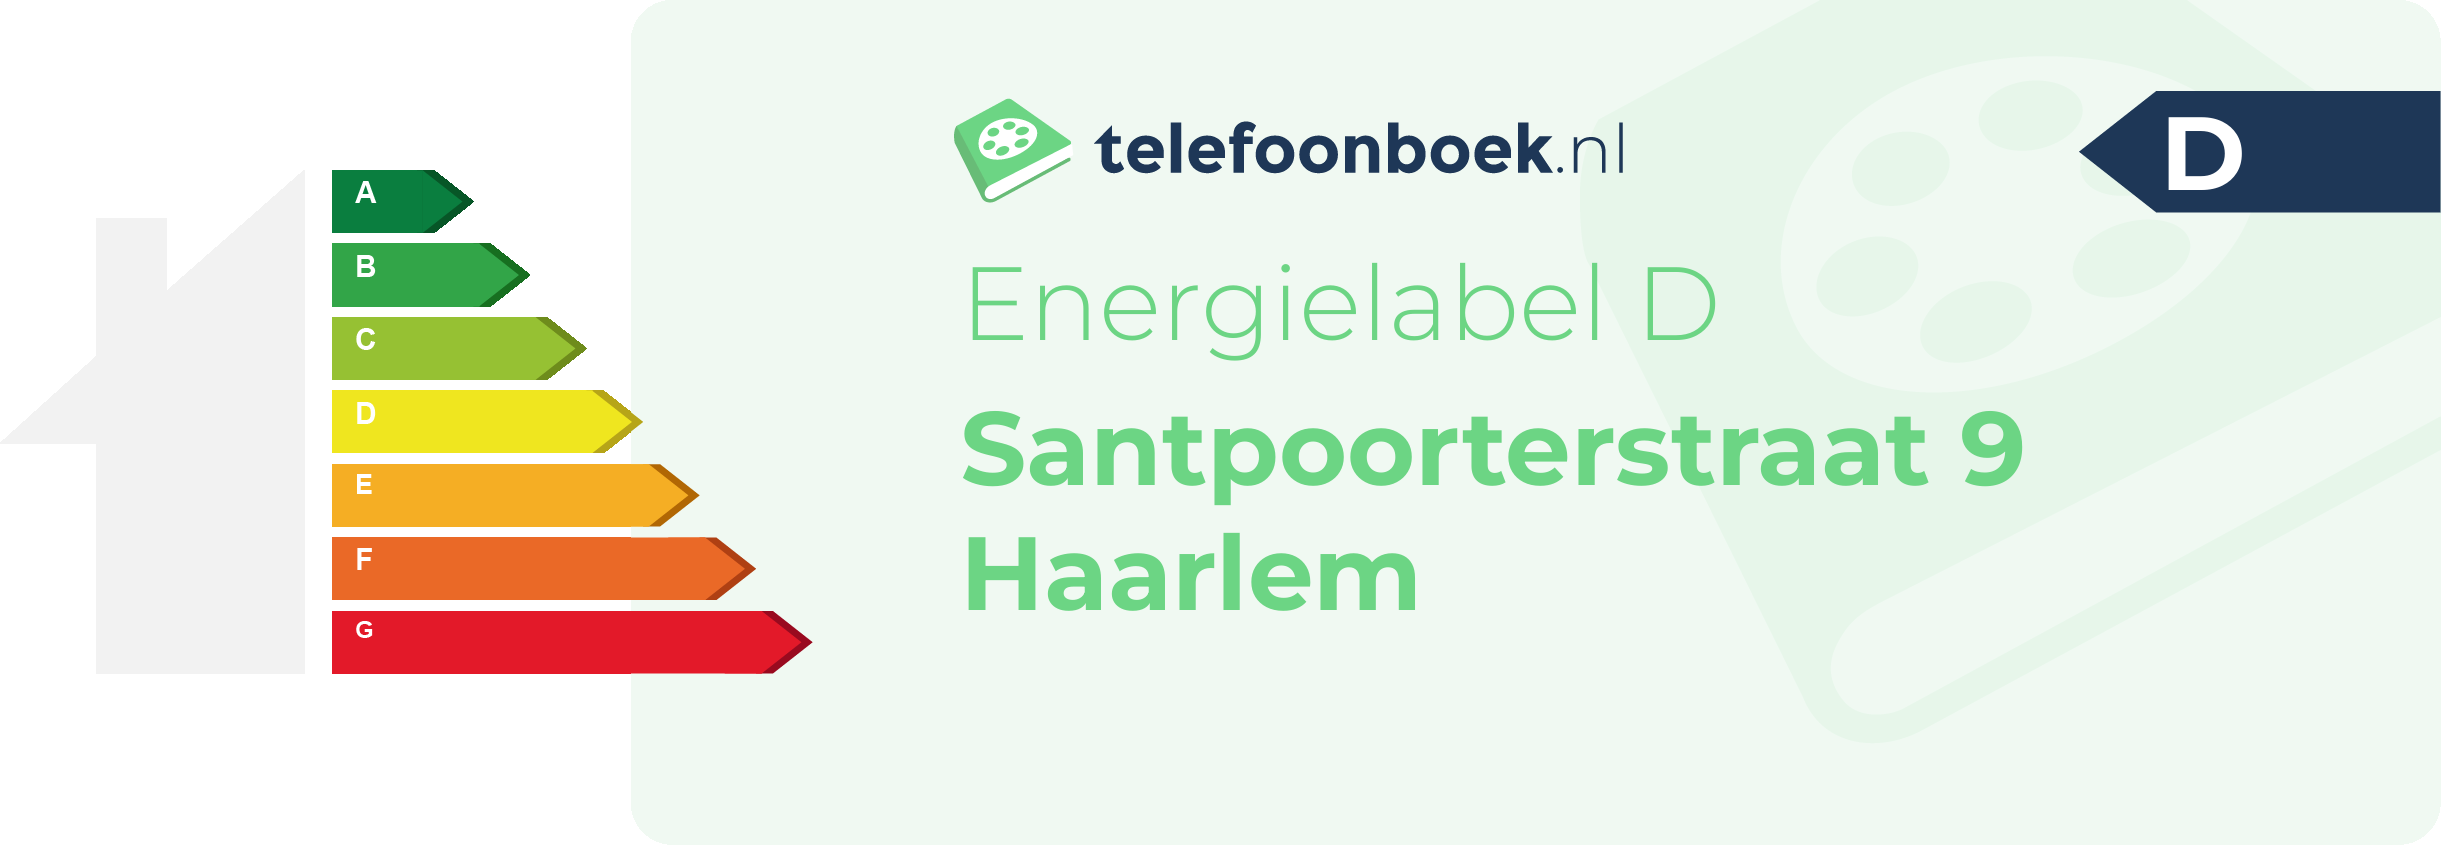 Energielabel Santpoorterstraat 9 Haarlem